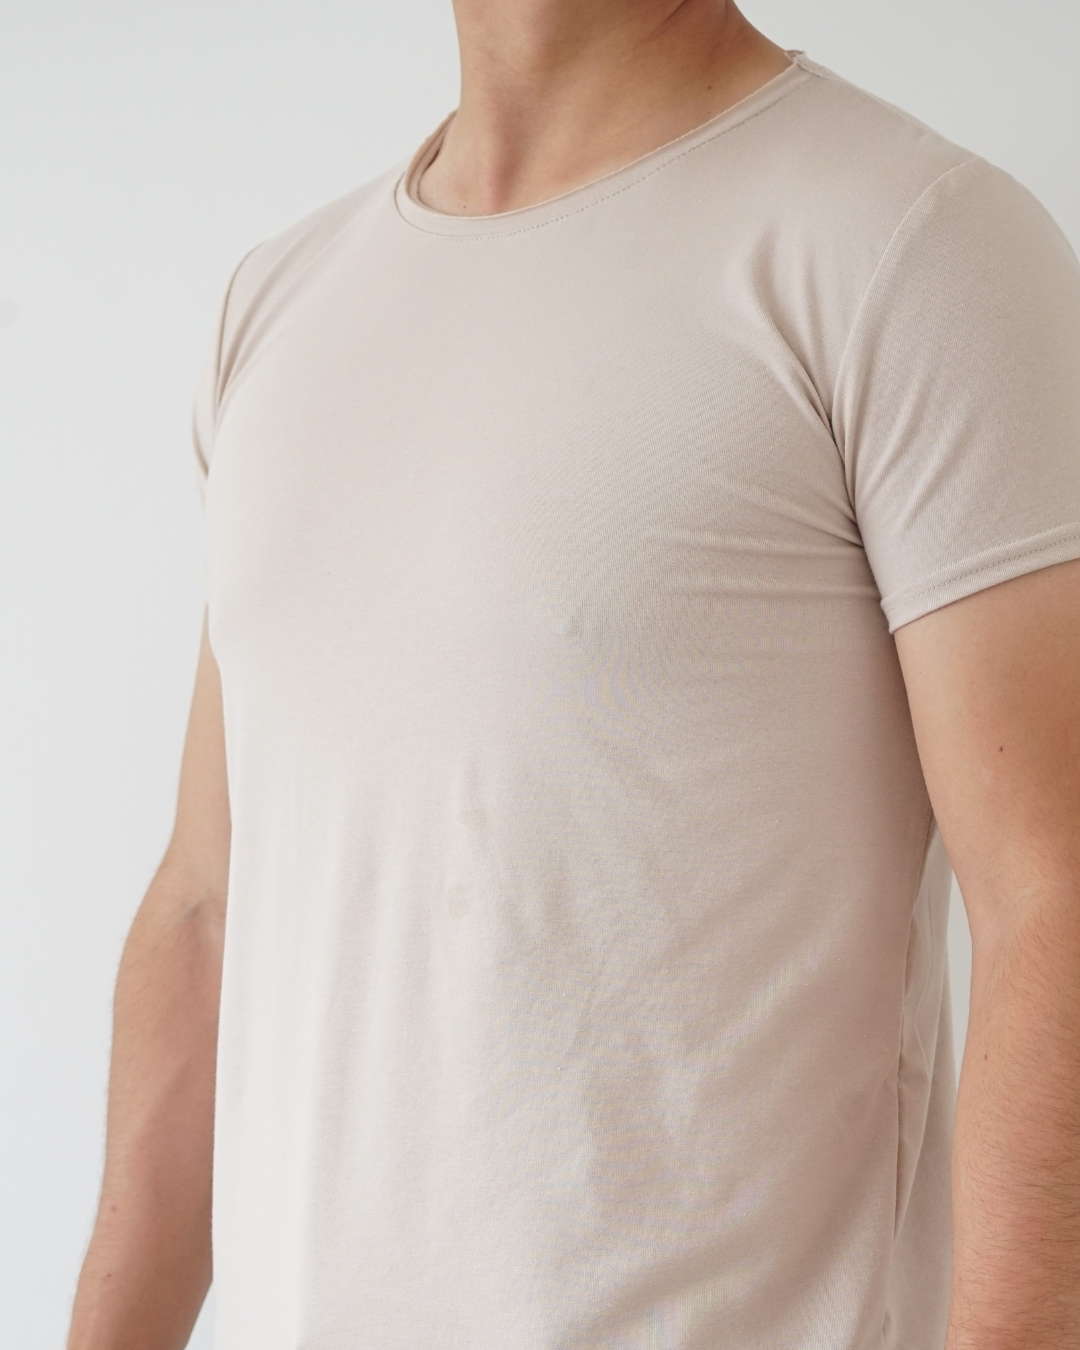 Sand T-shirt - Short Sleeve Wide Neck Original Bottom